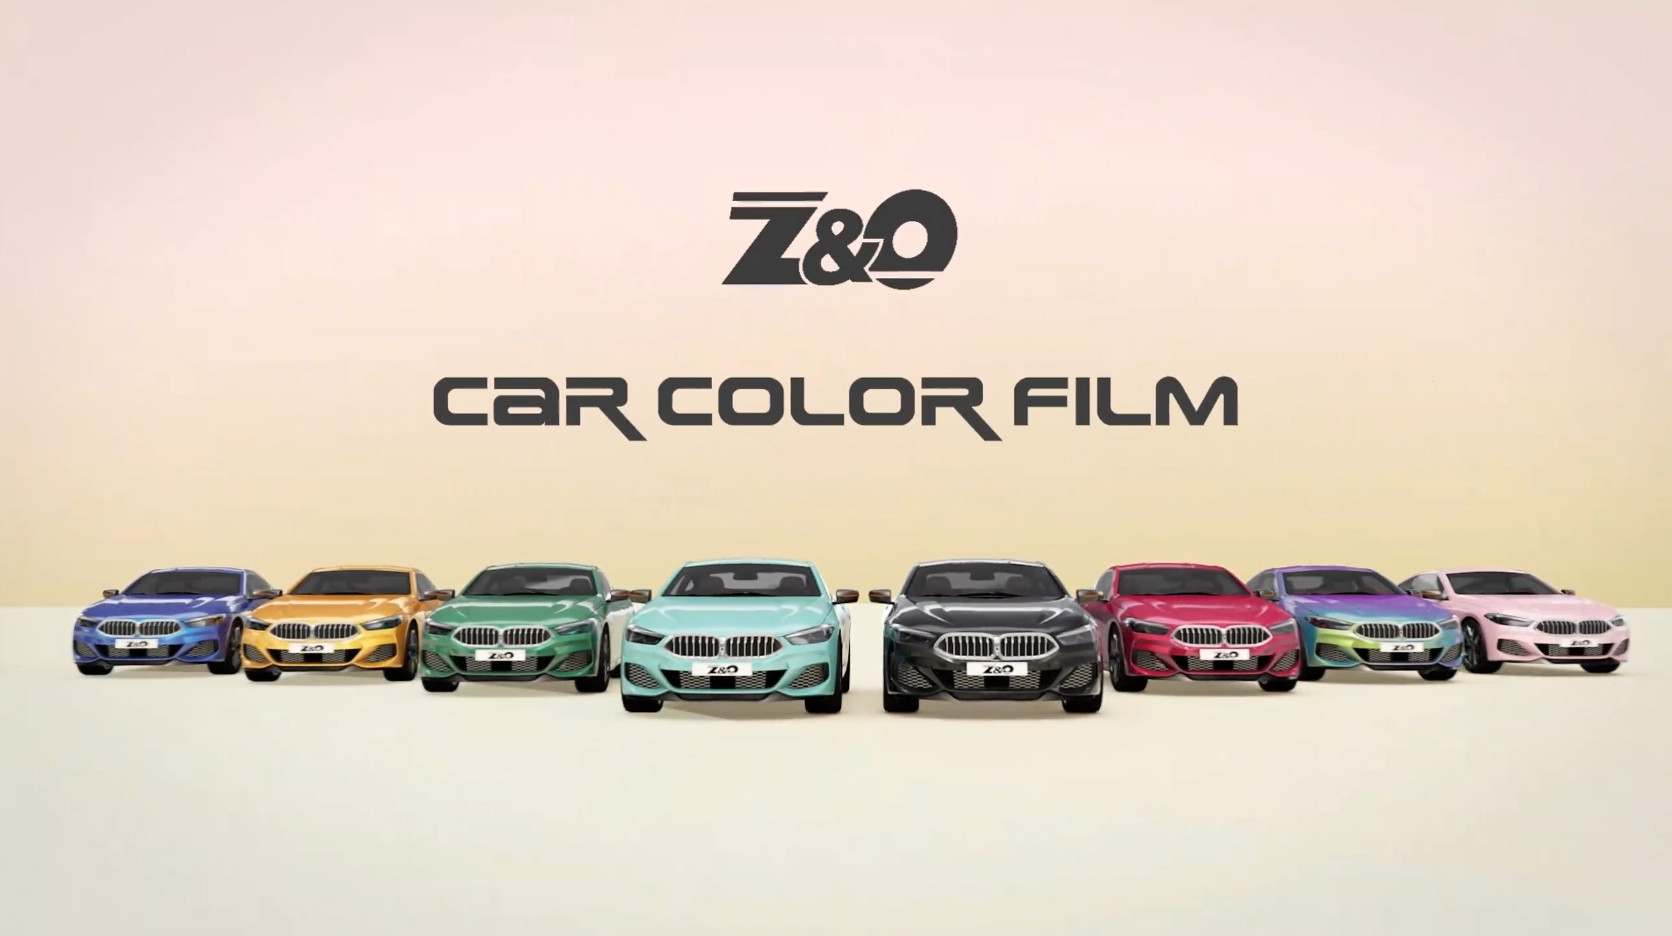 Dán Wrap Film Z&O Đổi Màu Ô tô cho xe 7 chỗ